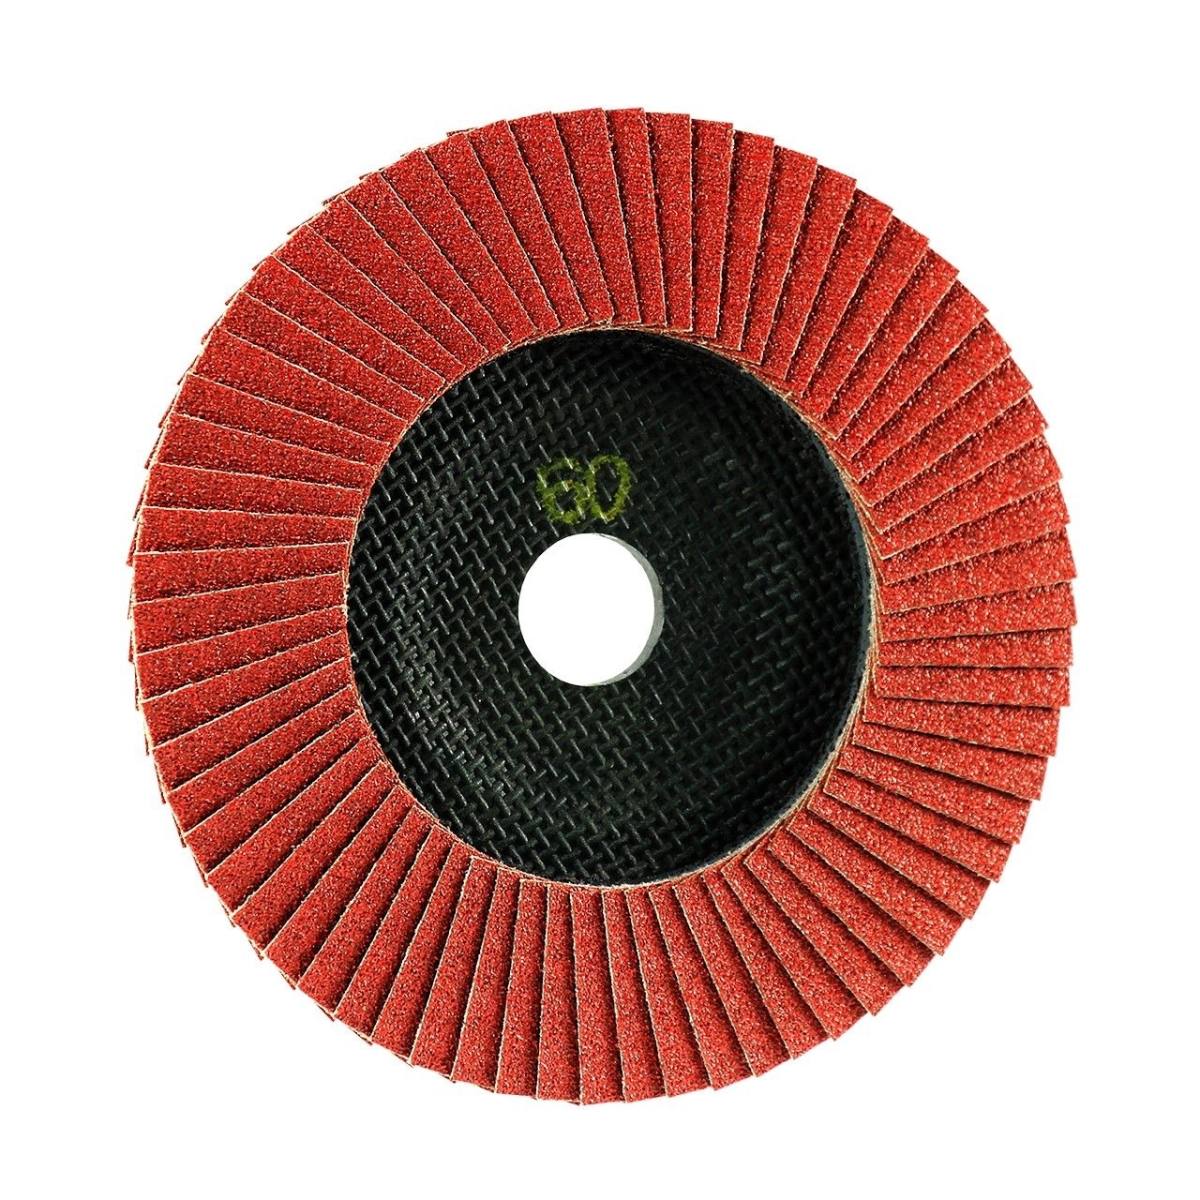 TRIMFIX SteelFire, 178 mm x 22.2 mm, grit 60, flap disc